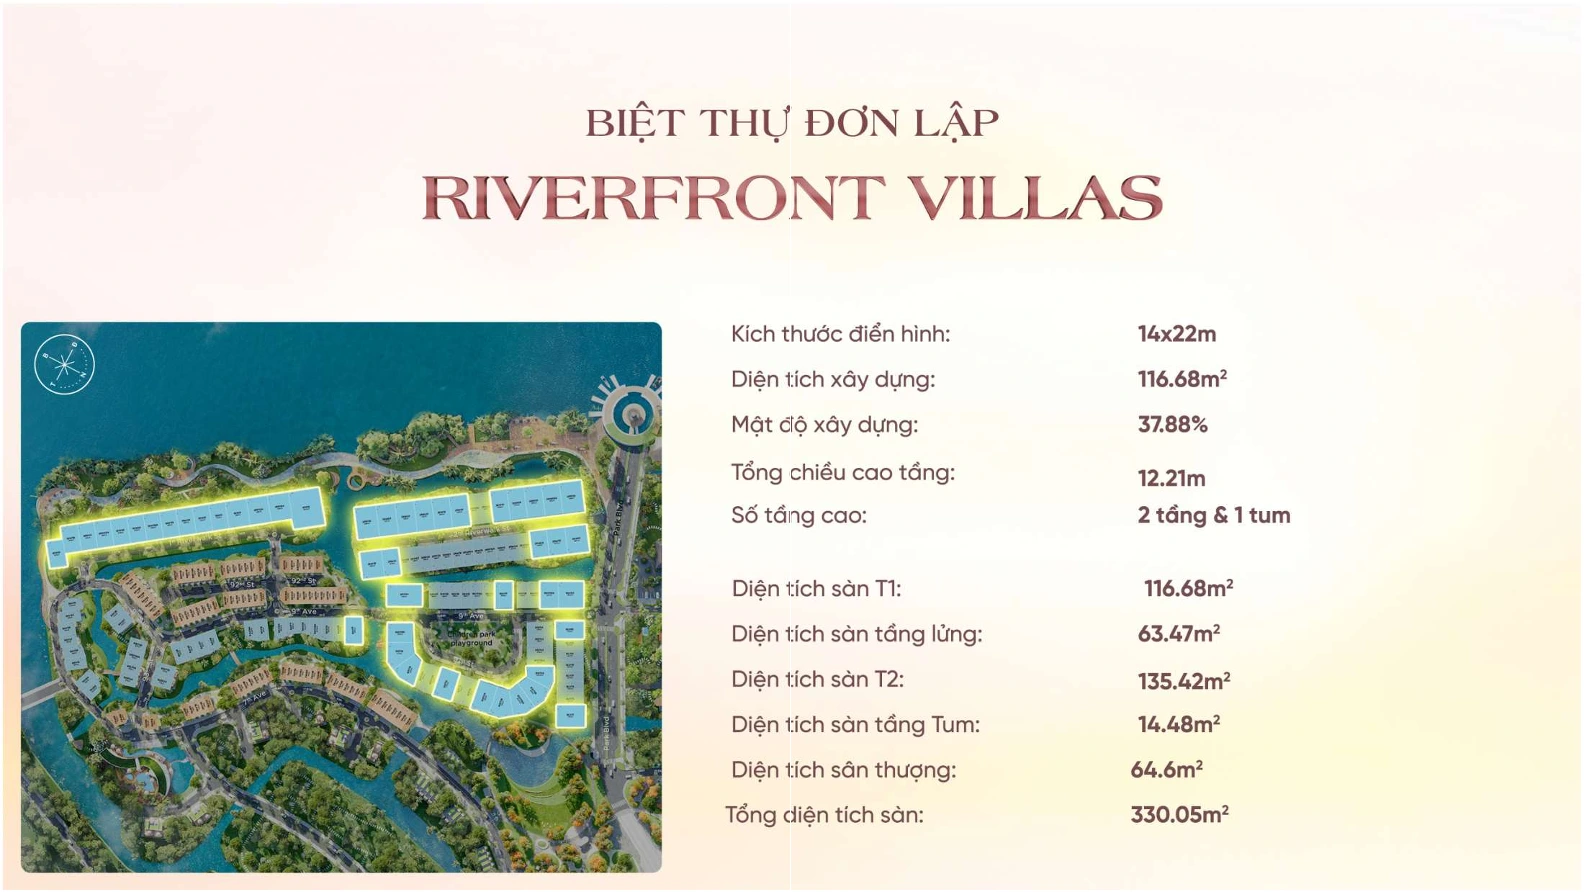 thông số kỹ thuật riverfront villas đơn lập eco village saigon river 1